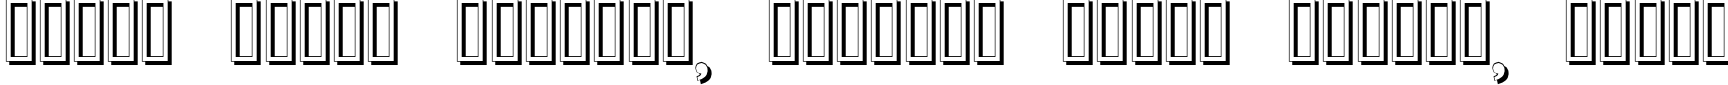 Пример написания шрифтом Erbar Initialen Shadow текста на белорусском